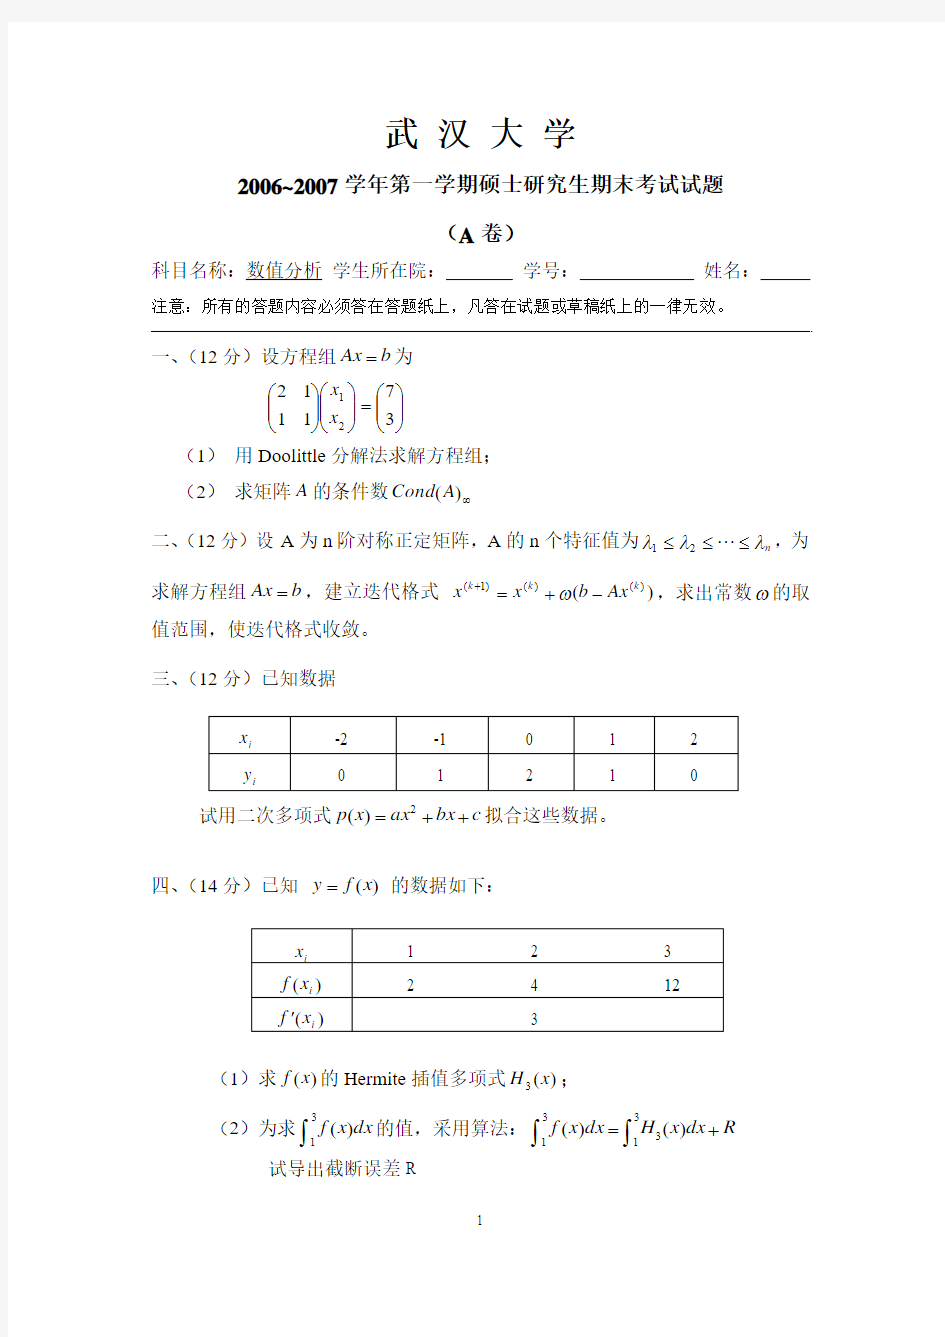 武汉大学06-10年(缺08-09)研究生数值分析考试试卷